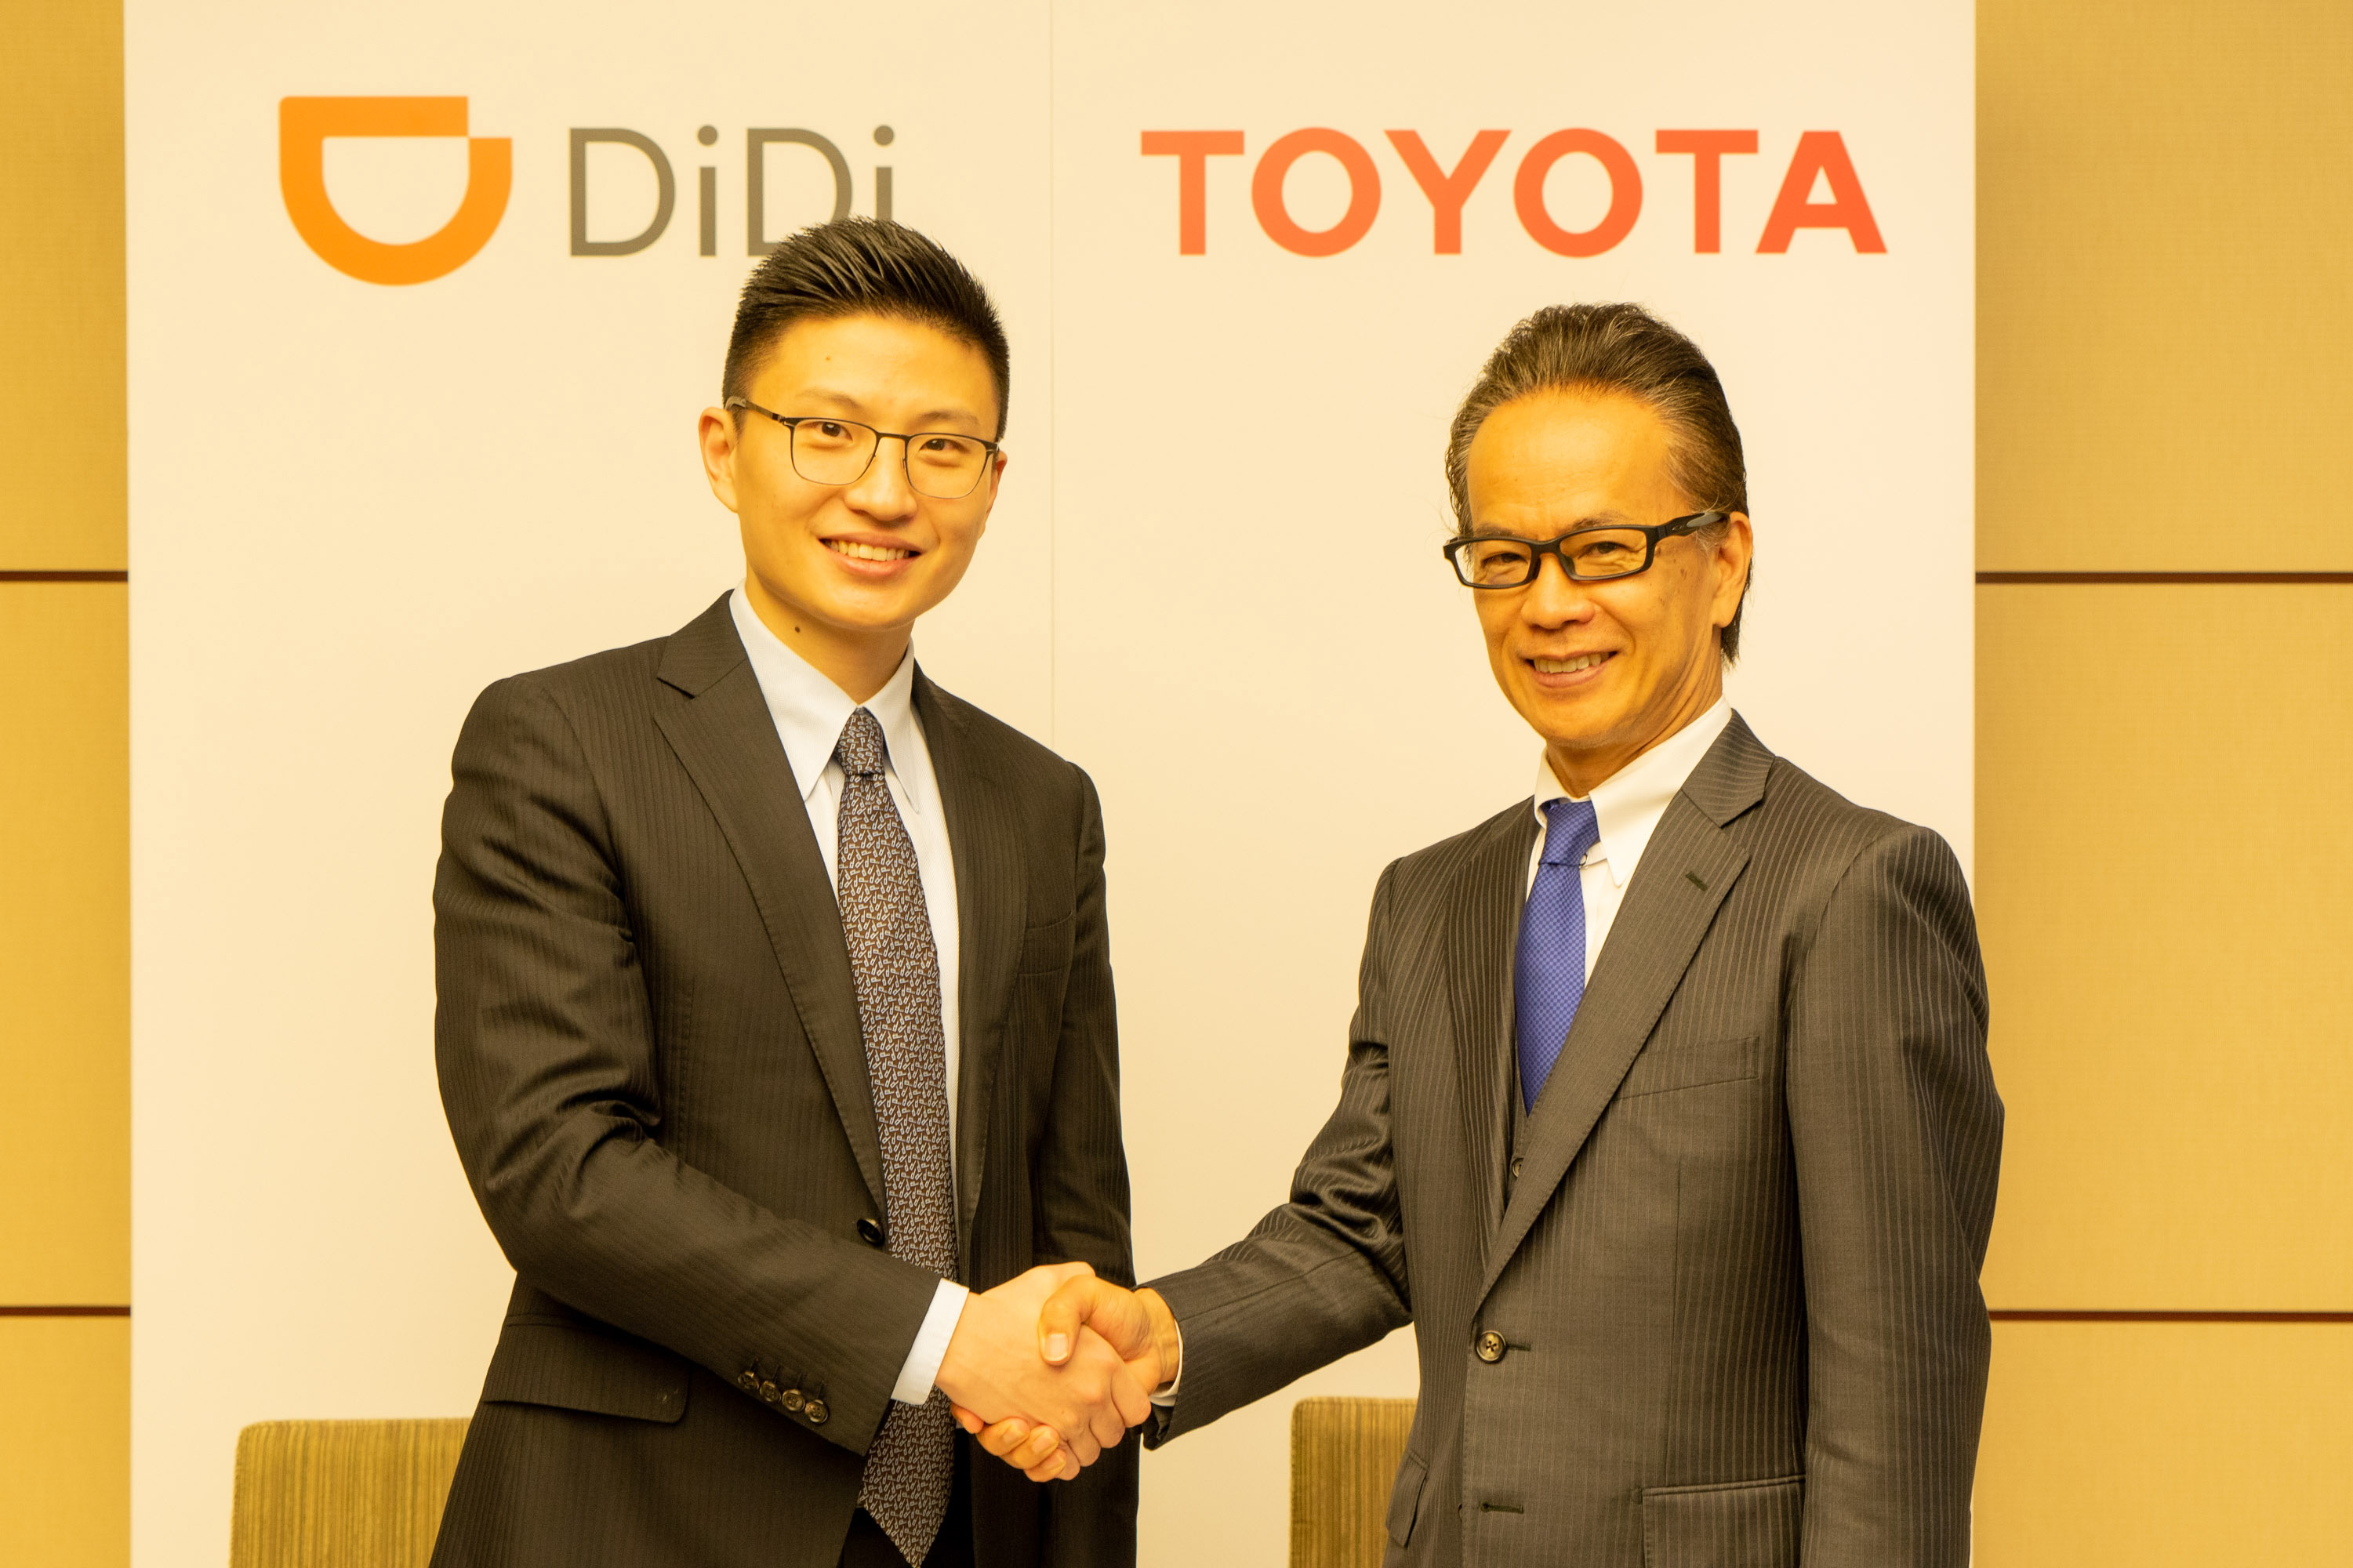 トヨタ、中国配車サービス「DiDi」と合弁会社設立。約660億円を出資